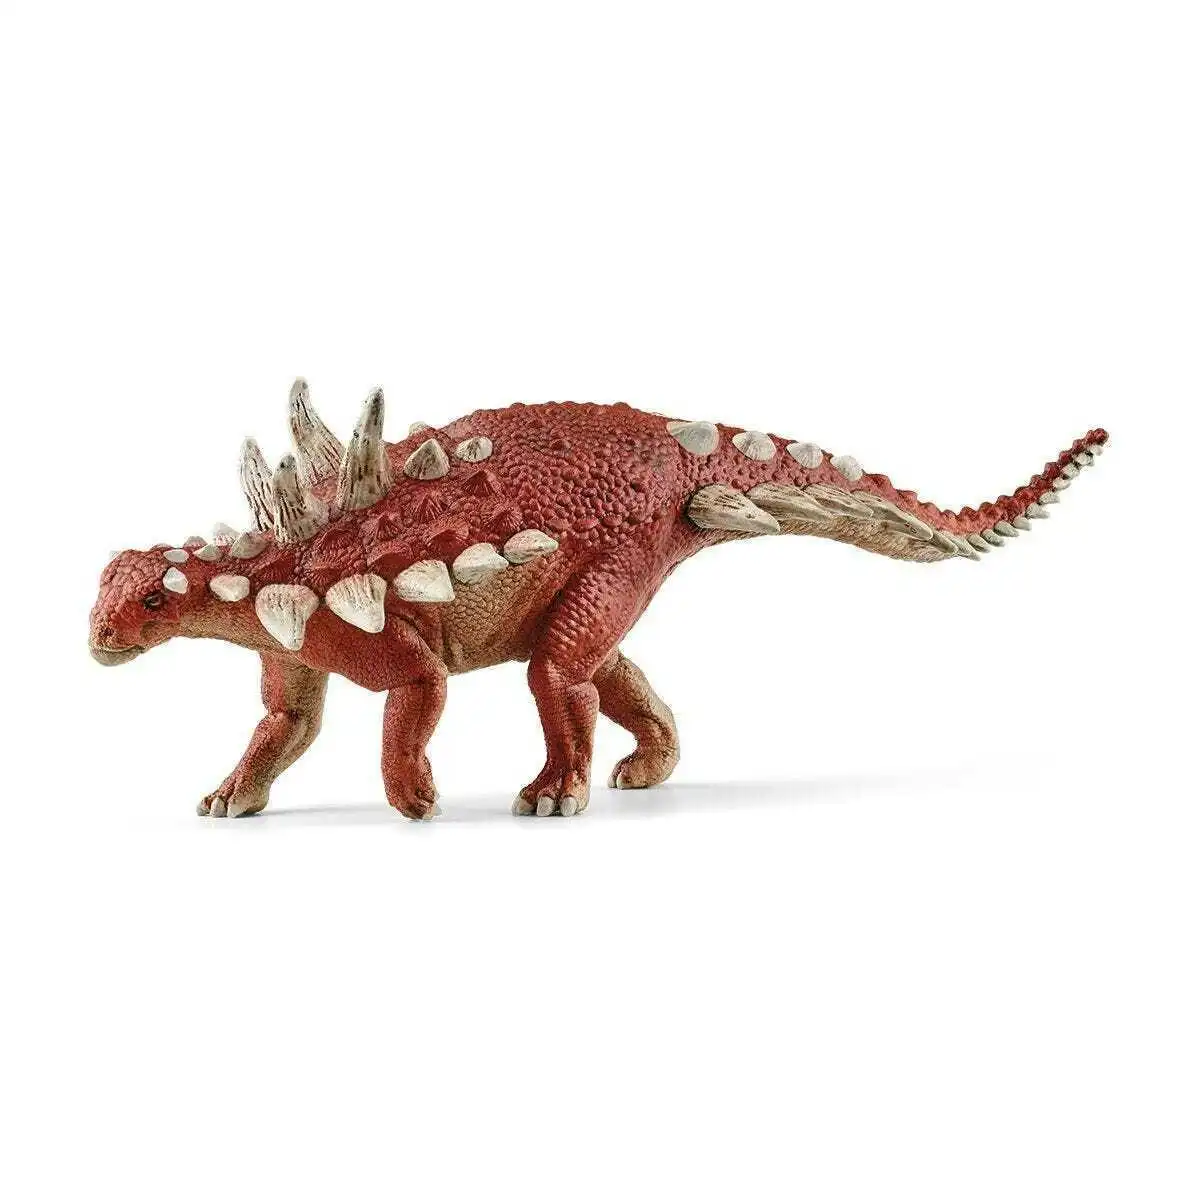 Schleich - Gastonia - Dinosaurs Figurine